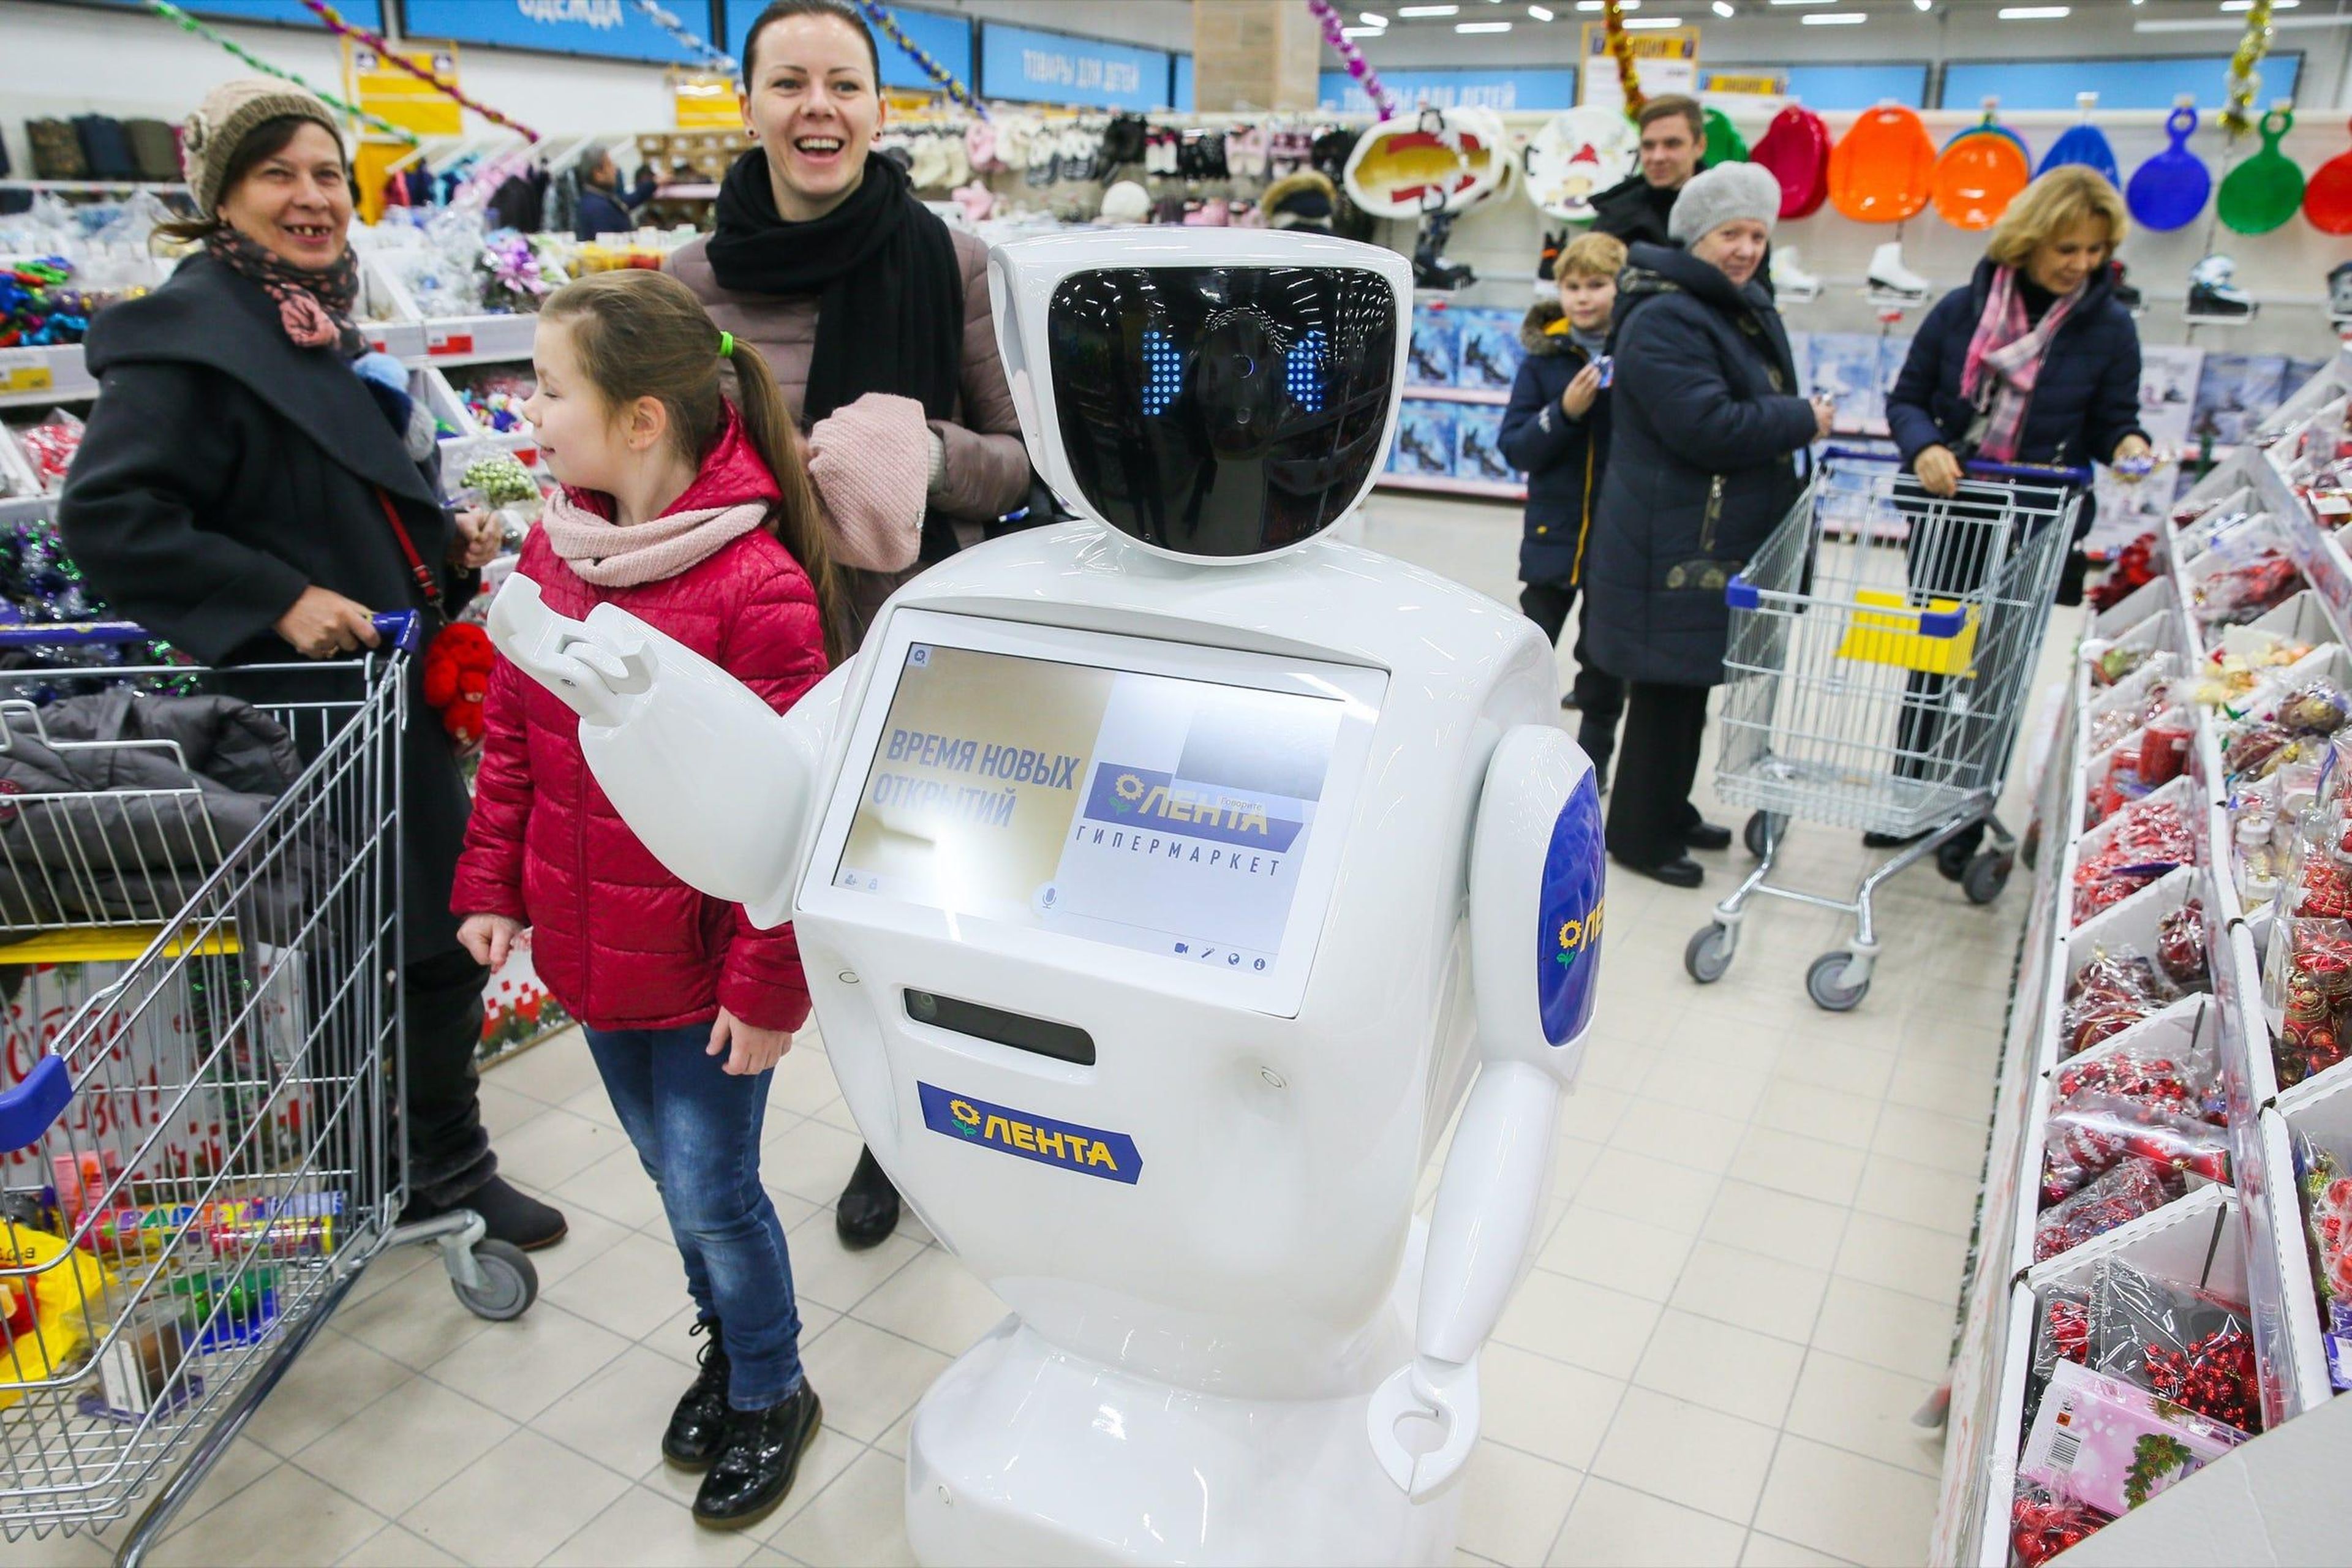 En Moscú, Rusia, algunos supermercados Lenta tienen robots Promobot, que recorren las tiendas y anuncian descuentos y promociones. También reconocen a los clientes habituales y pueden hacer demostraciones de productos.